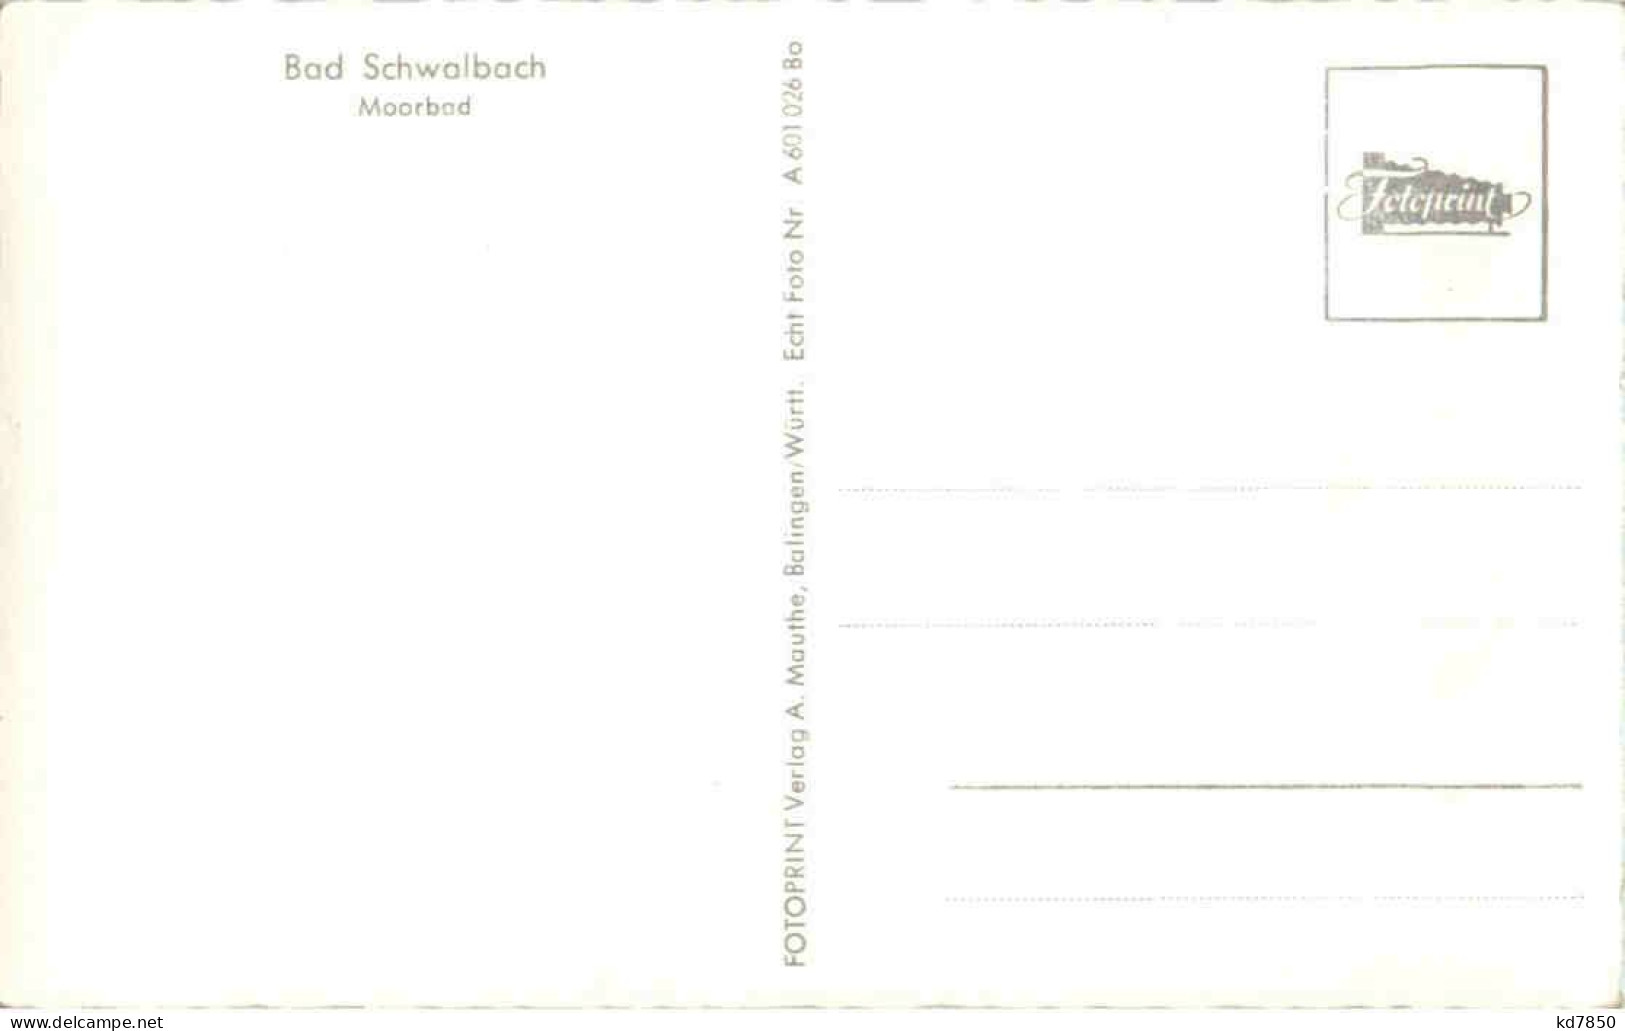 Bad Schwalbach - Moorbad - Bad Schwalbach